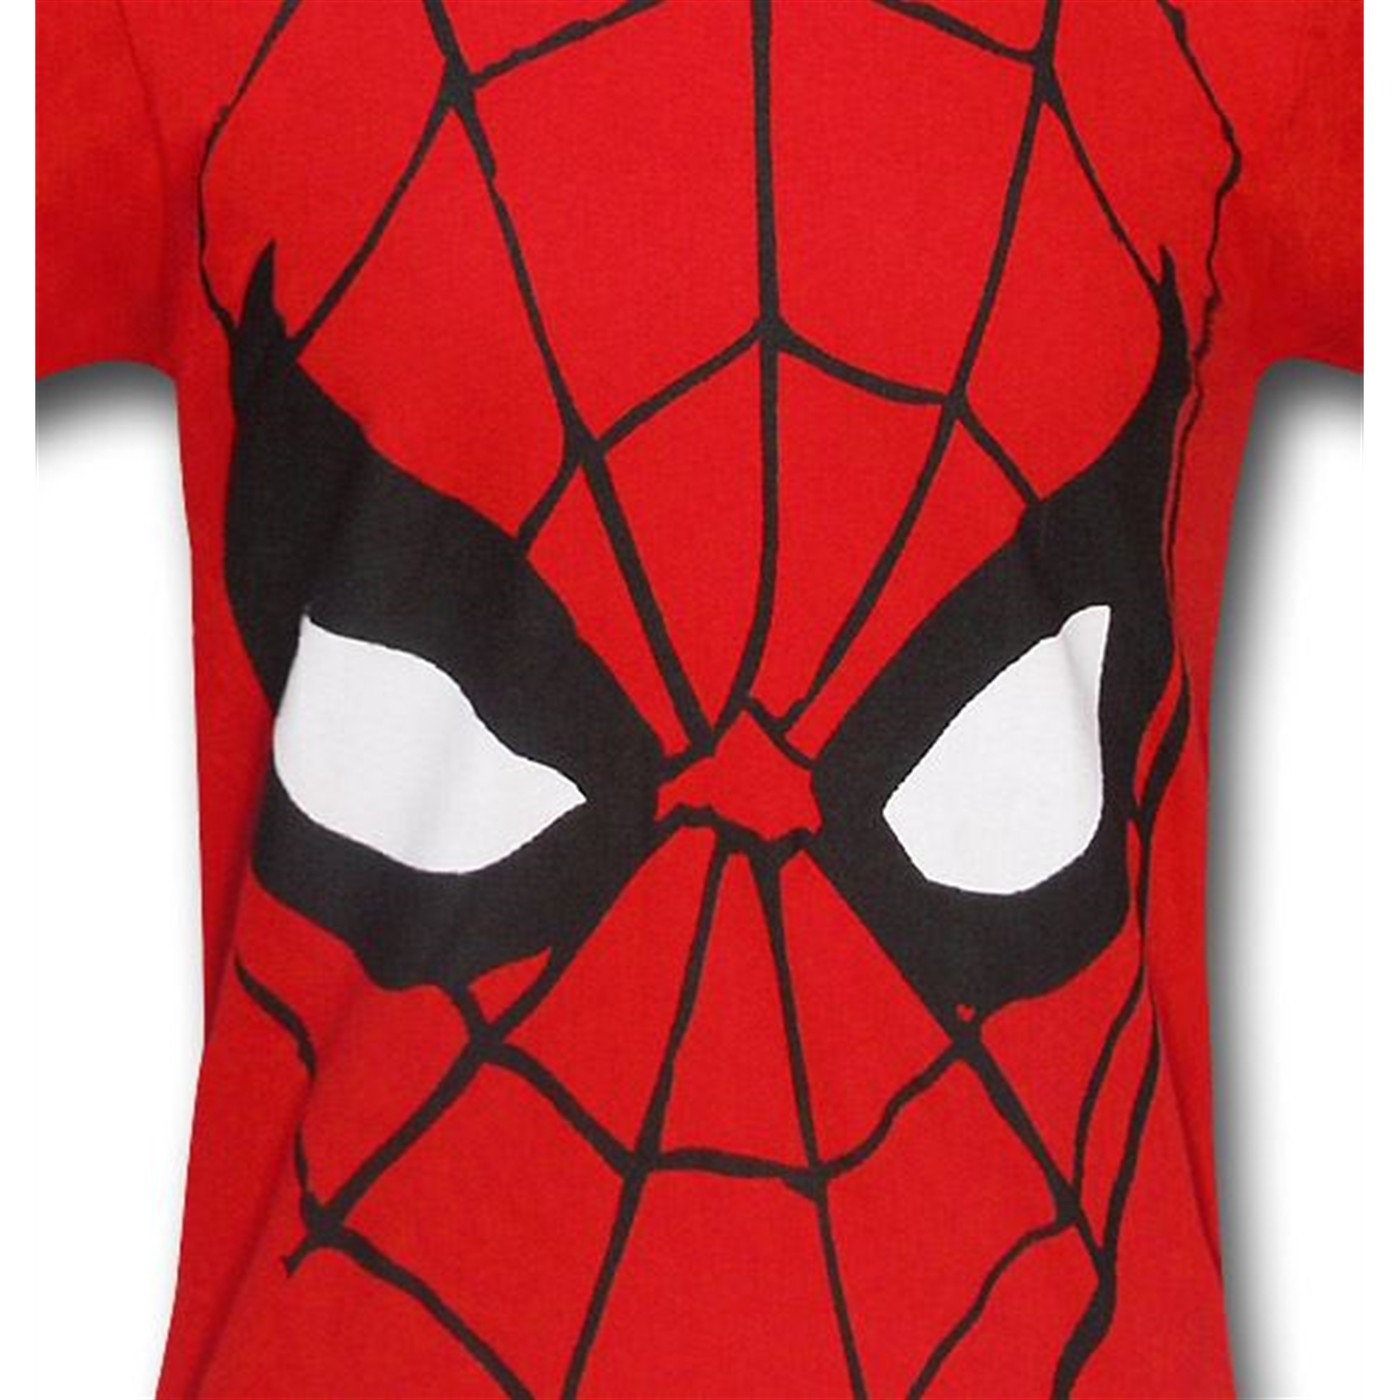 Spiderman Kids Web Head T-Shirt